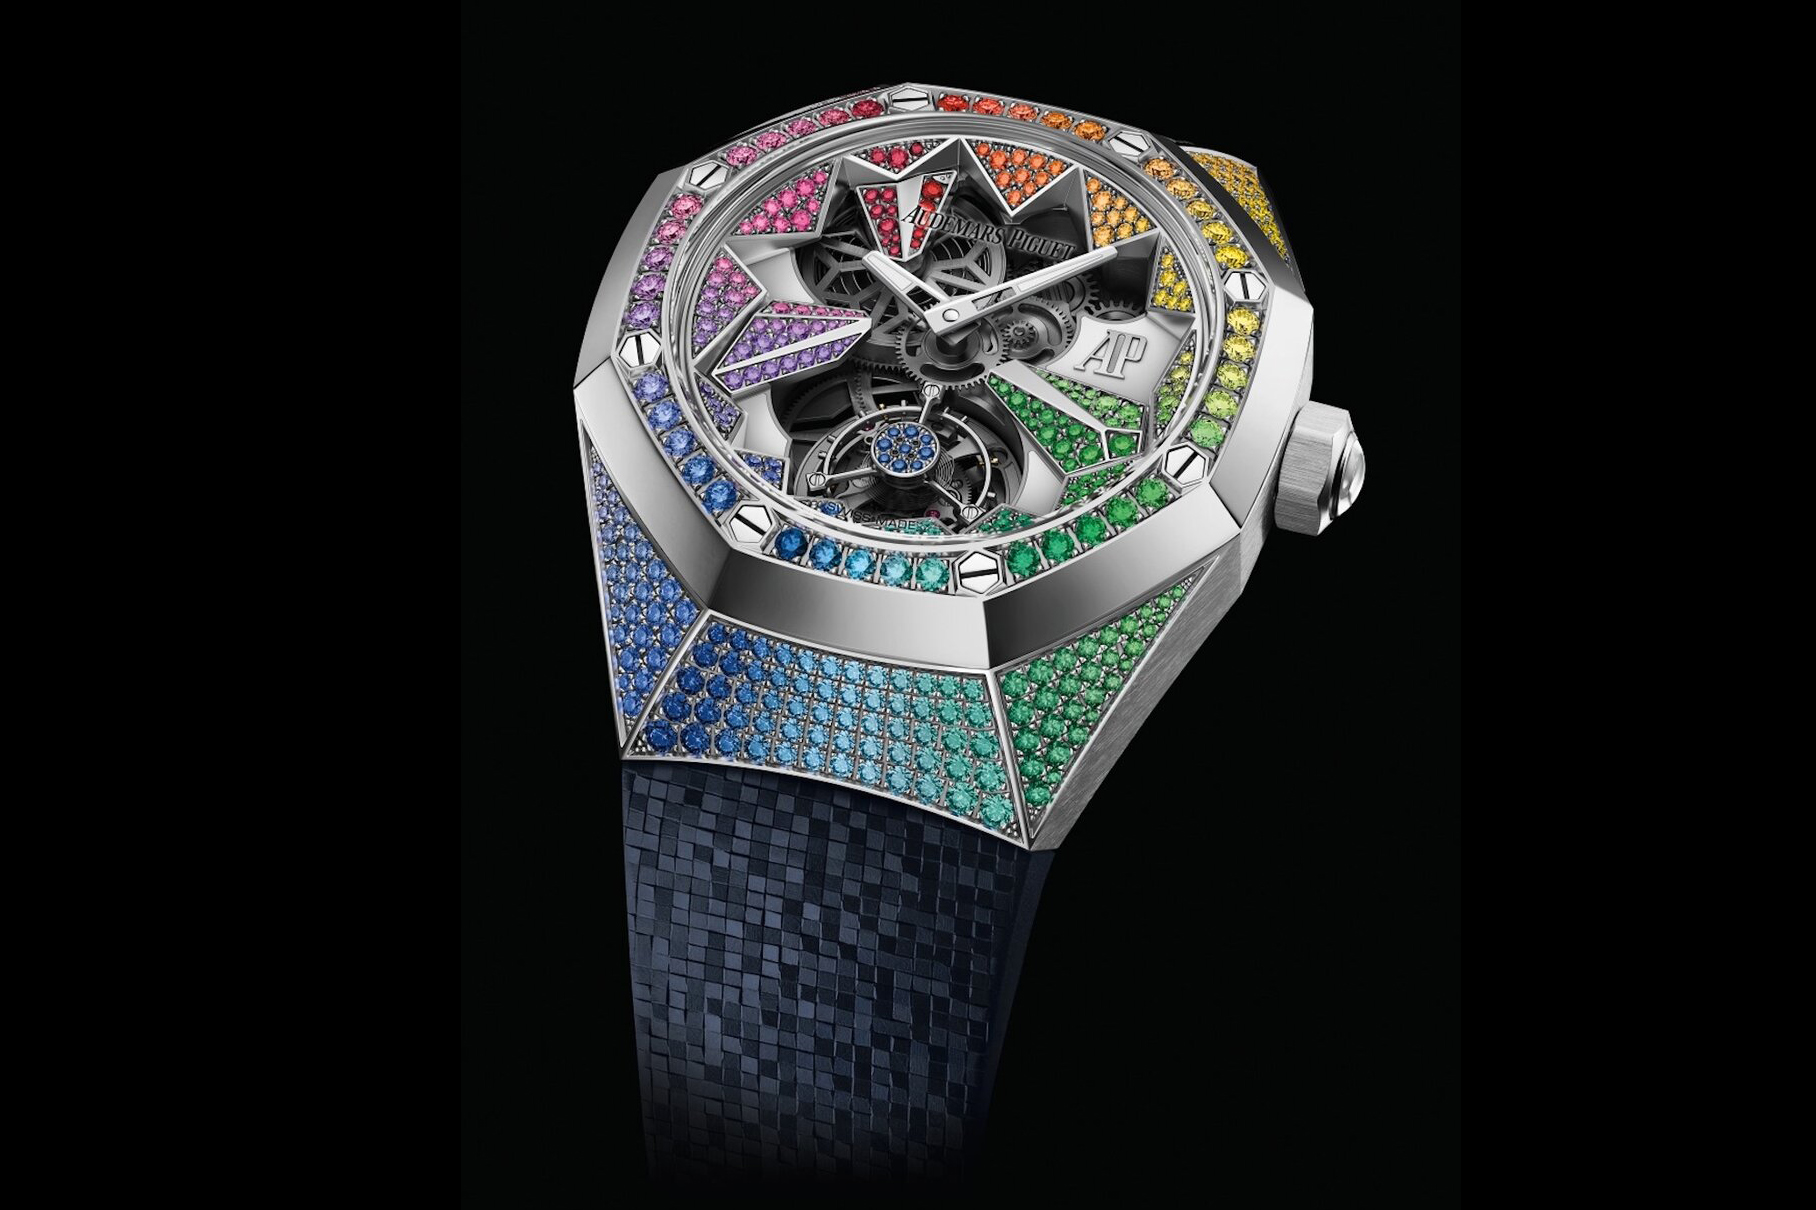 Audemars Piguet kết hợp nghệ thuật chế tạo đồng hồ cao cấp và nghệ thuật nạm đá quý trong sáu chiếc Royal Oak Concept Flying Tourbillon mới